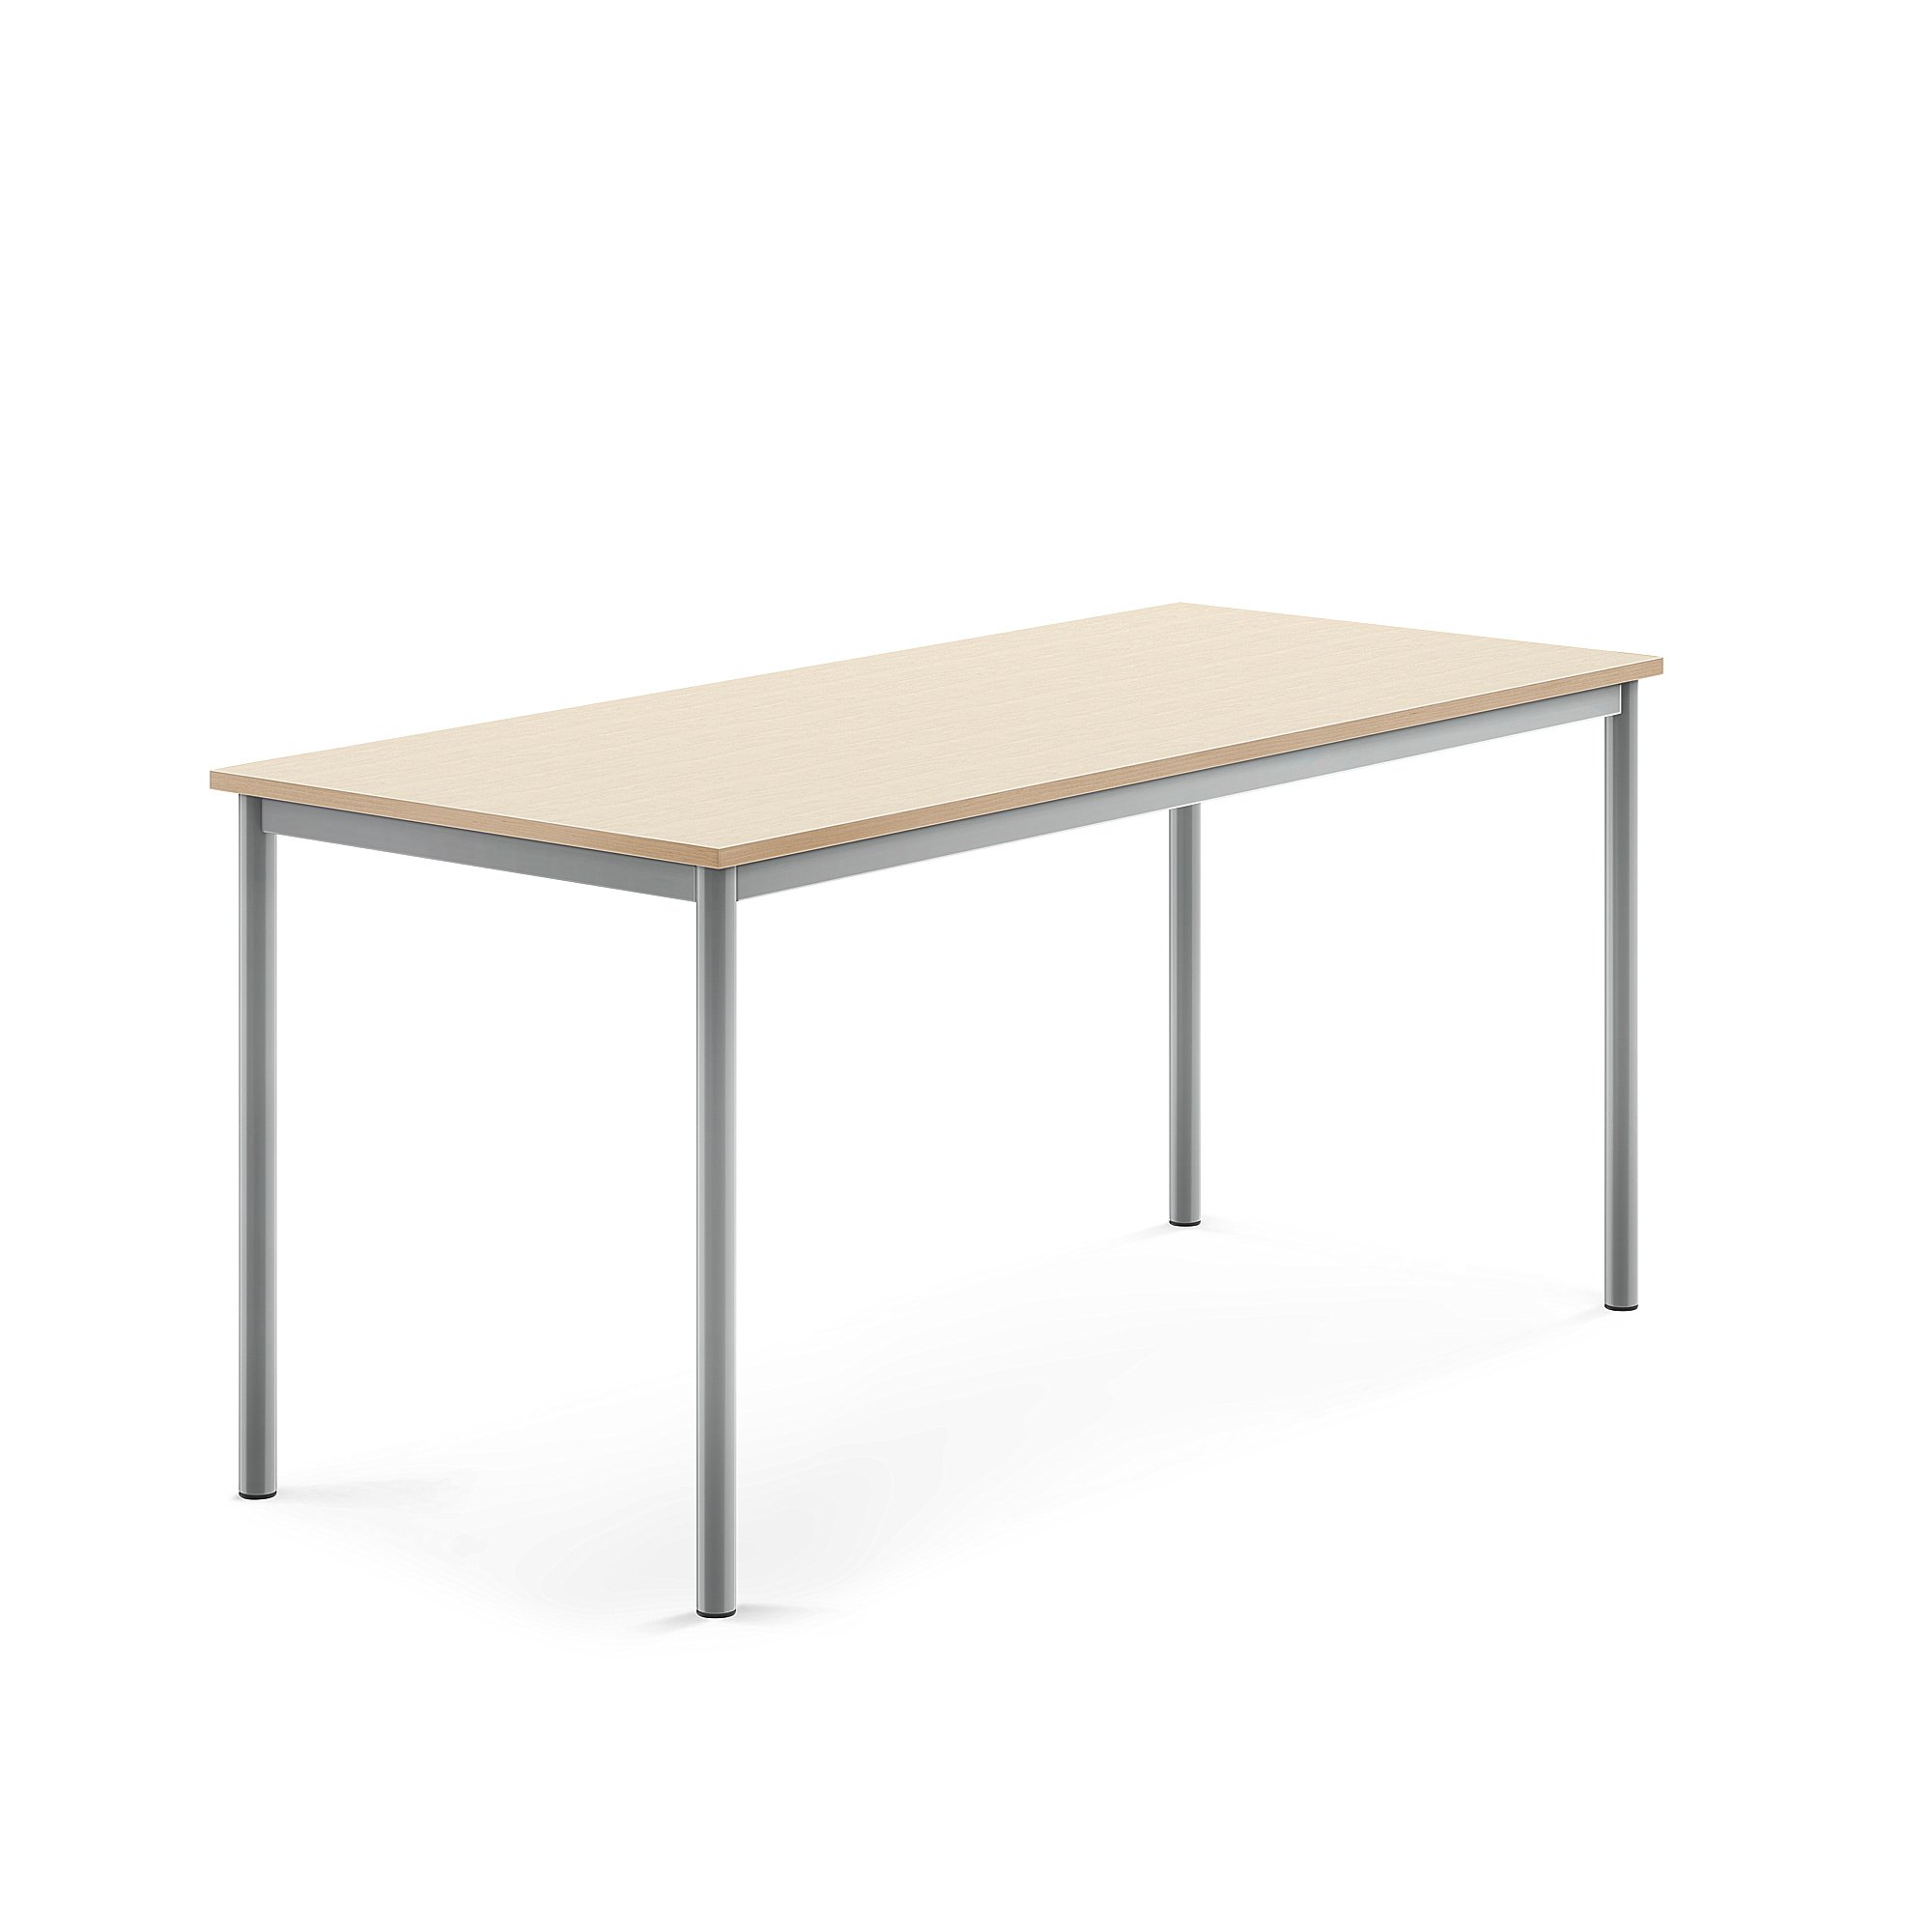 Stůl BORÅS, 1600x700x720 mm, stříbrné nohy, HPL deska, bříza